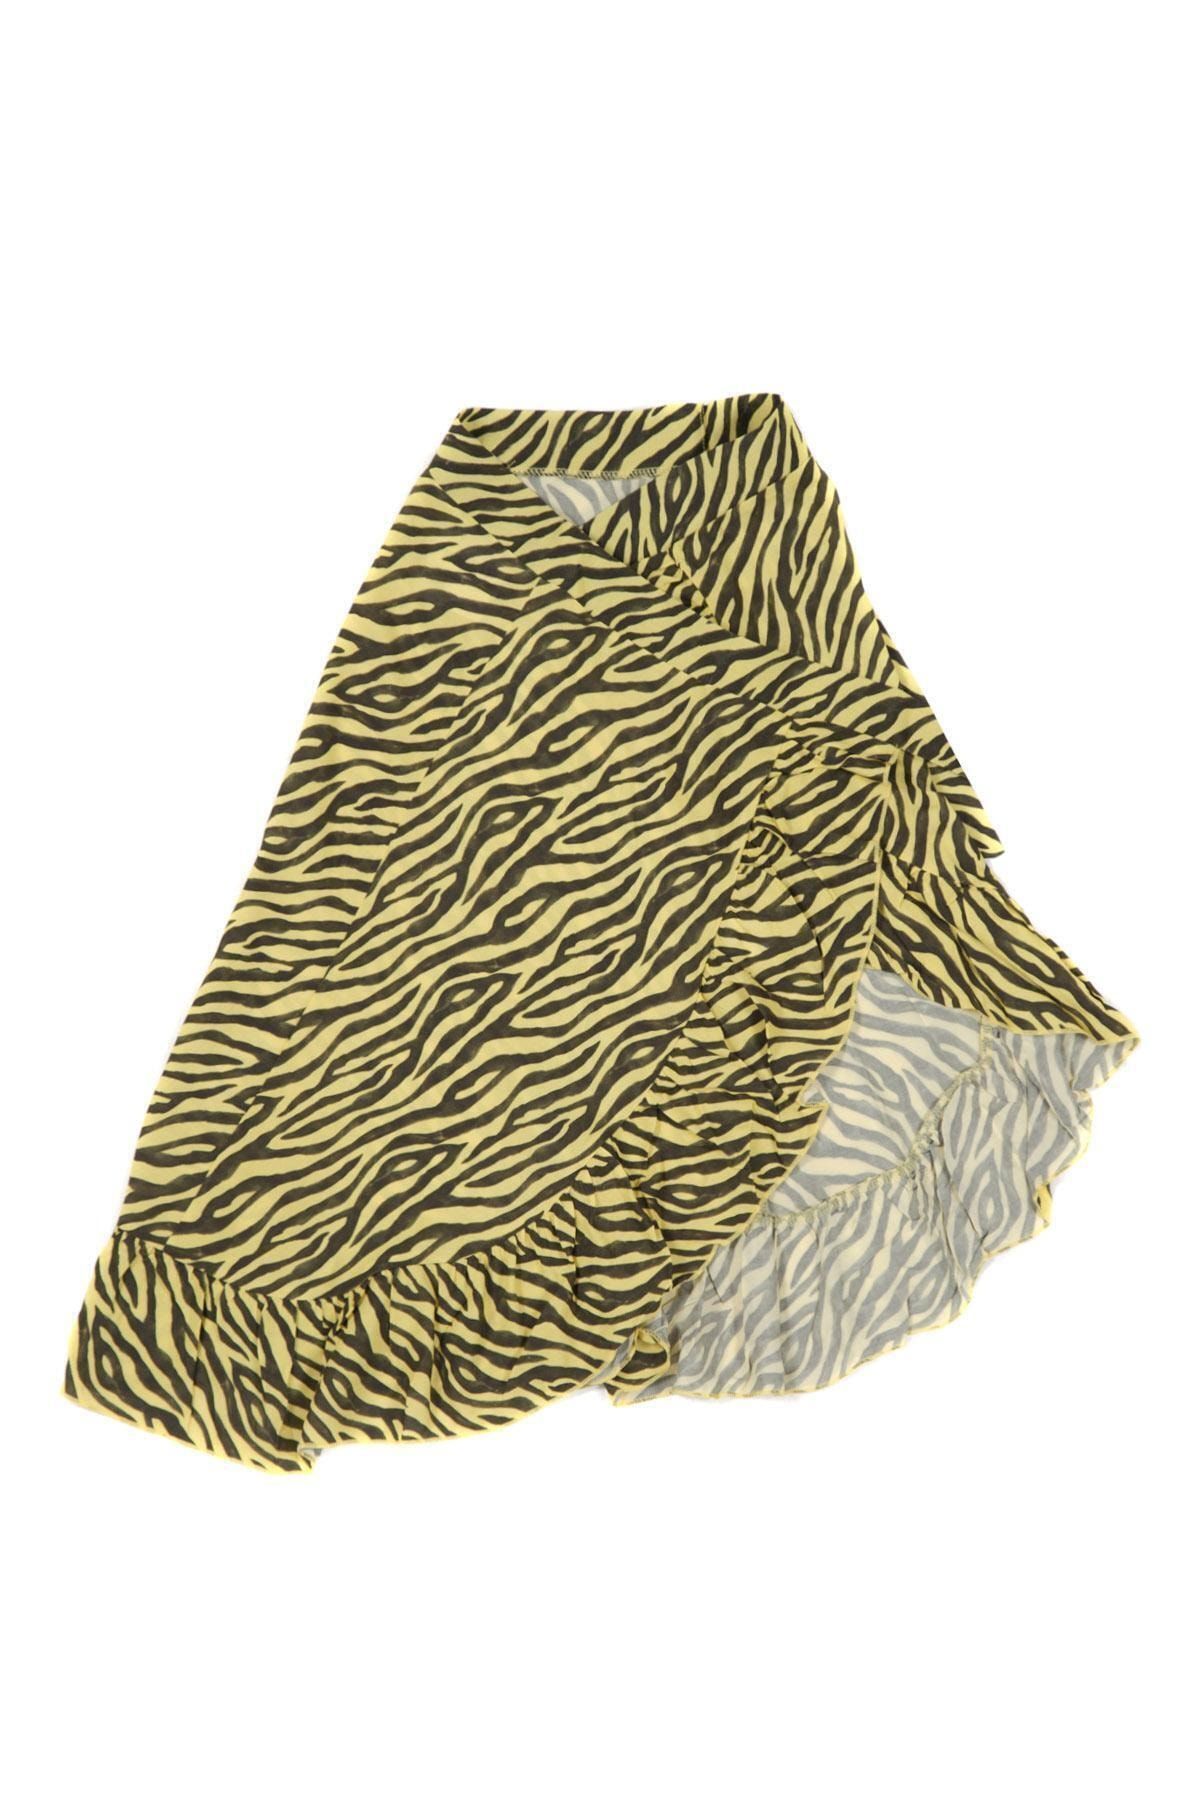 çikoby Kız Çocuk Zebra Desenli Anvelop Etek 7-14 Yaş C19w-ck2161